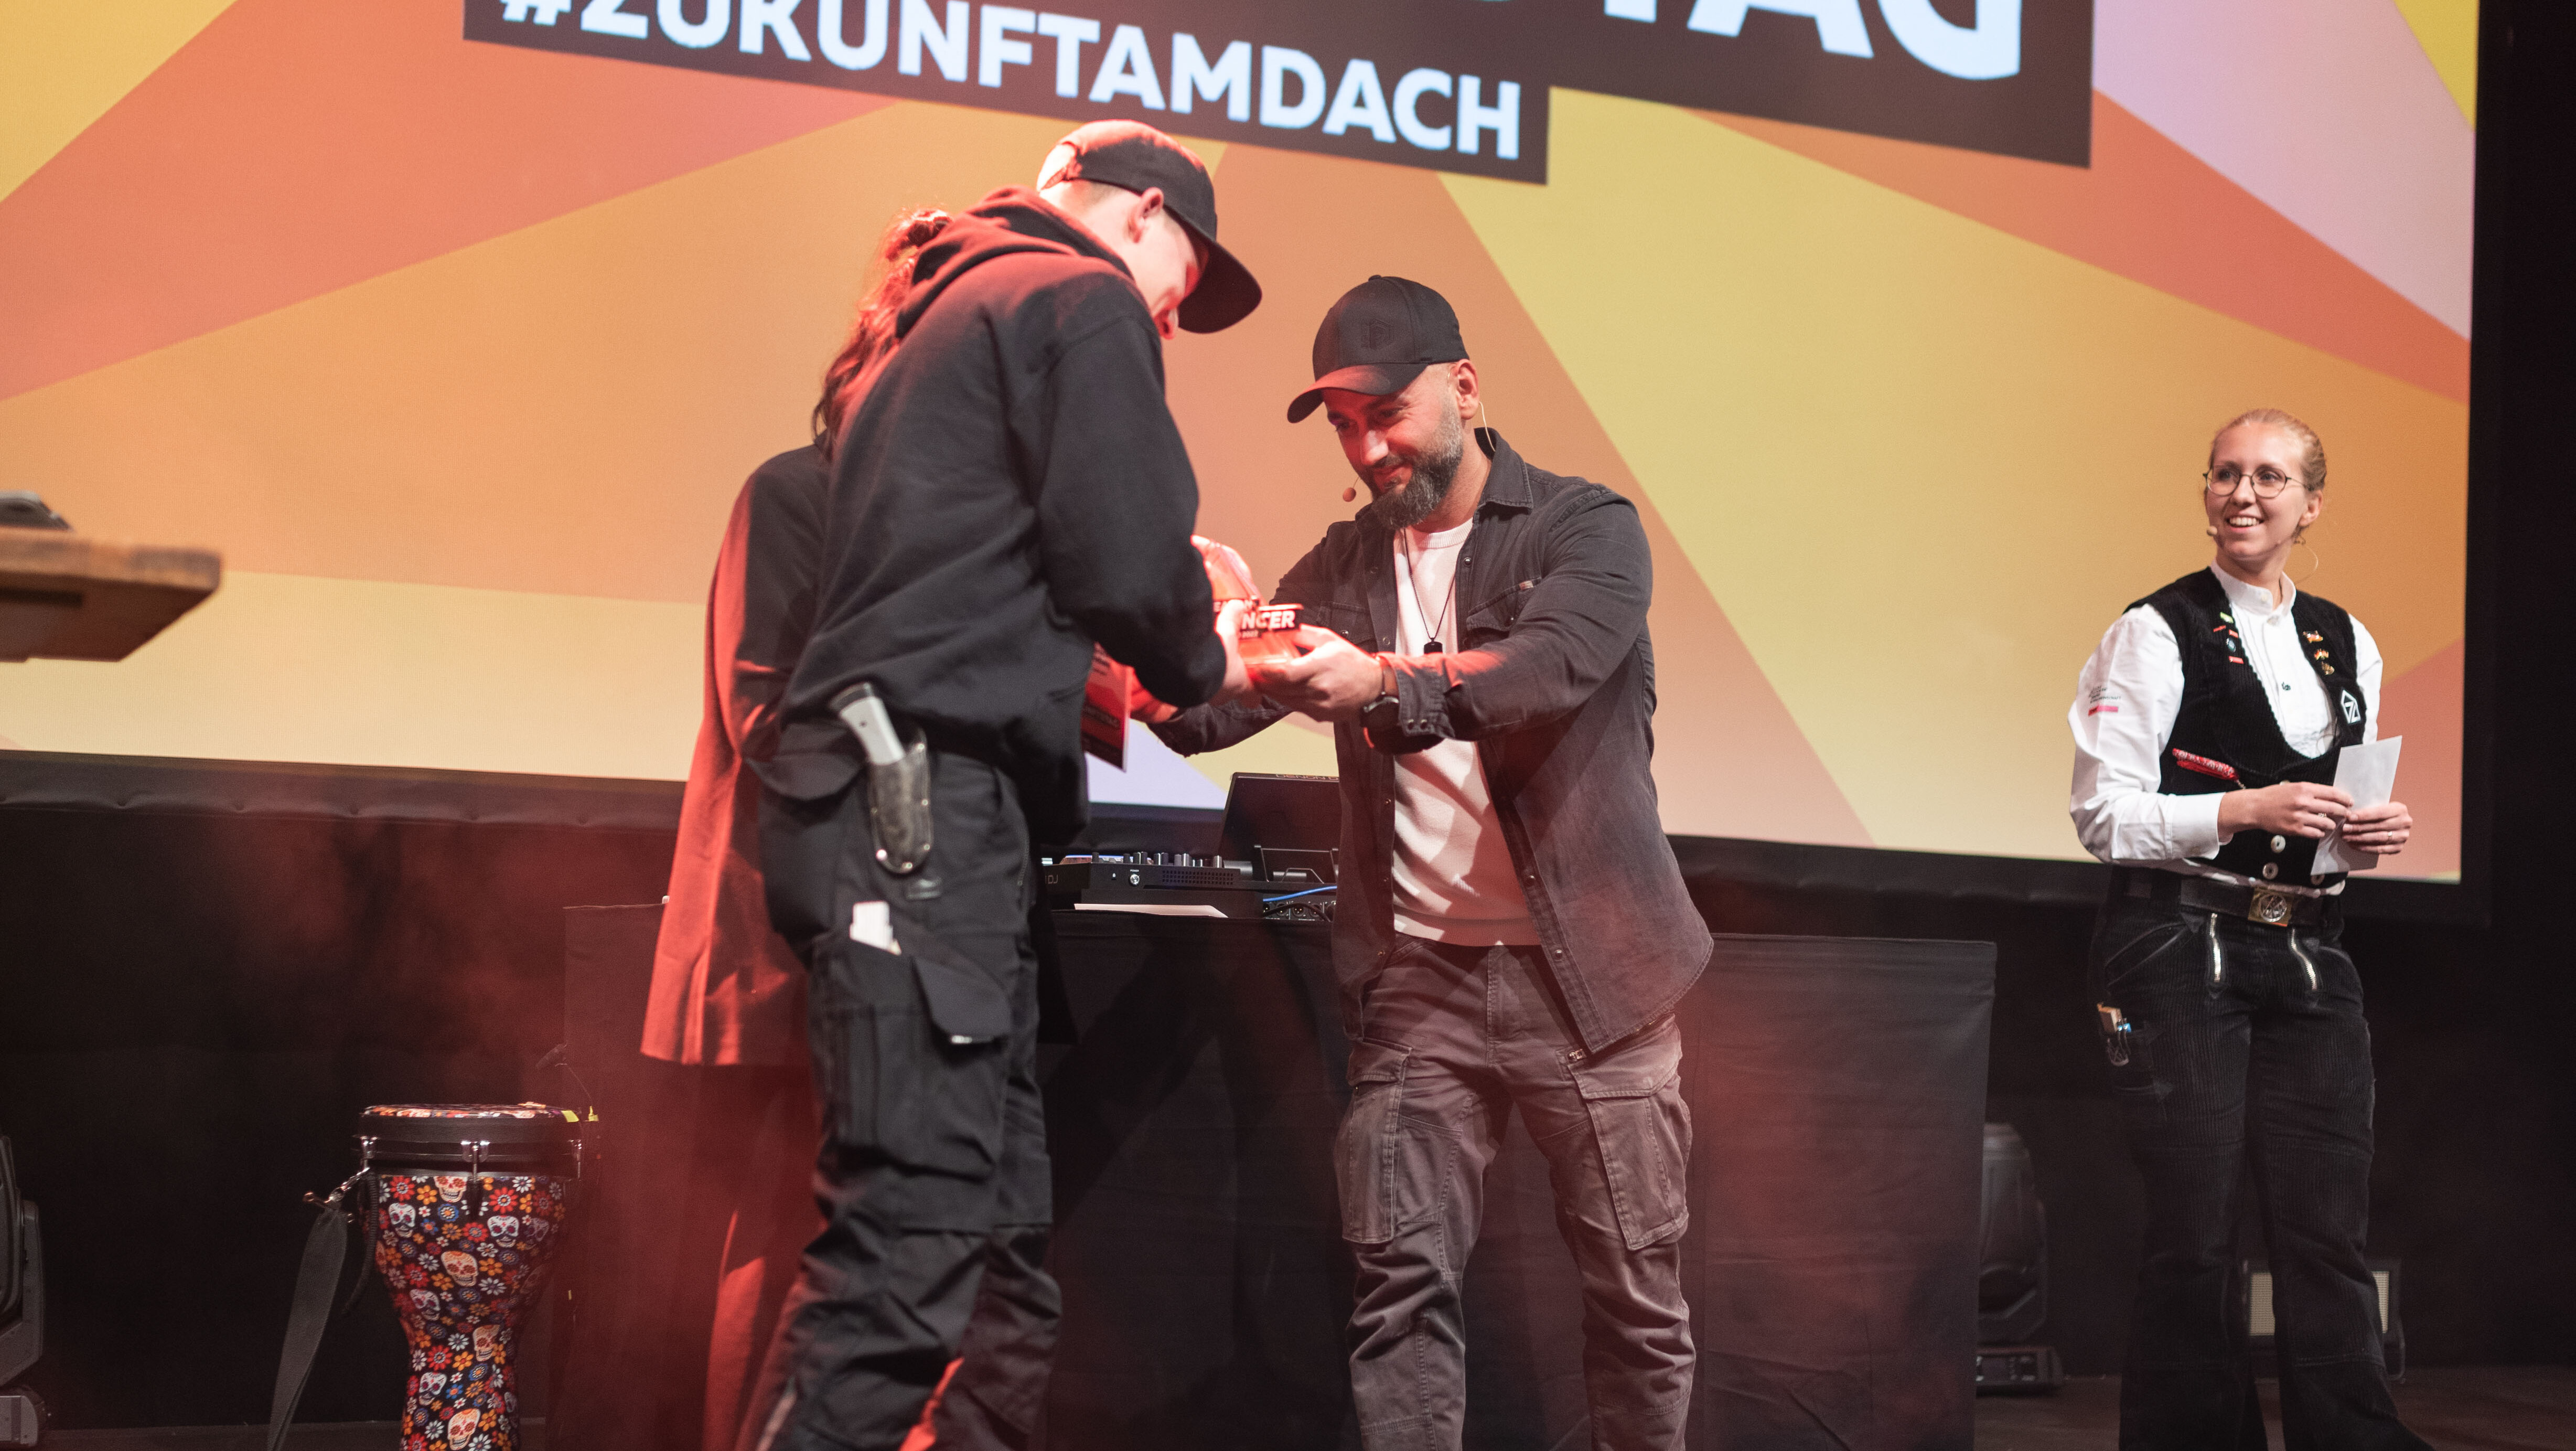 Sieger des Creaton Influencer Award 2022 wurde Maurice Odendahl, der die Auszeichnung vom vormaligen Sieger Dach PRO entgegennahm.